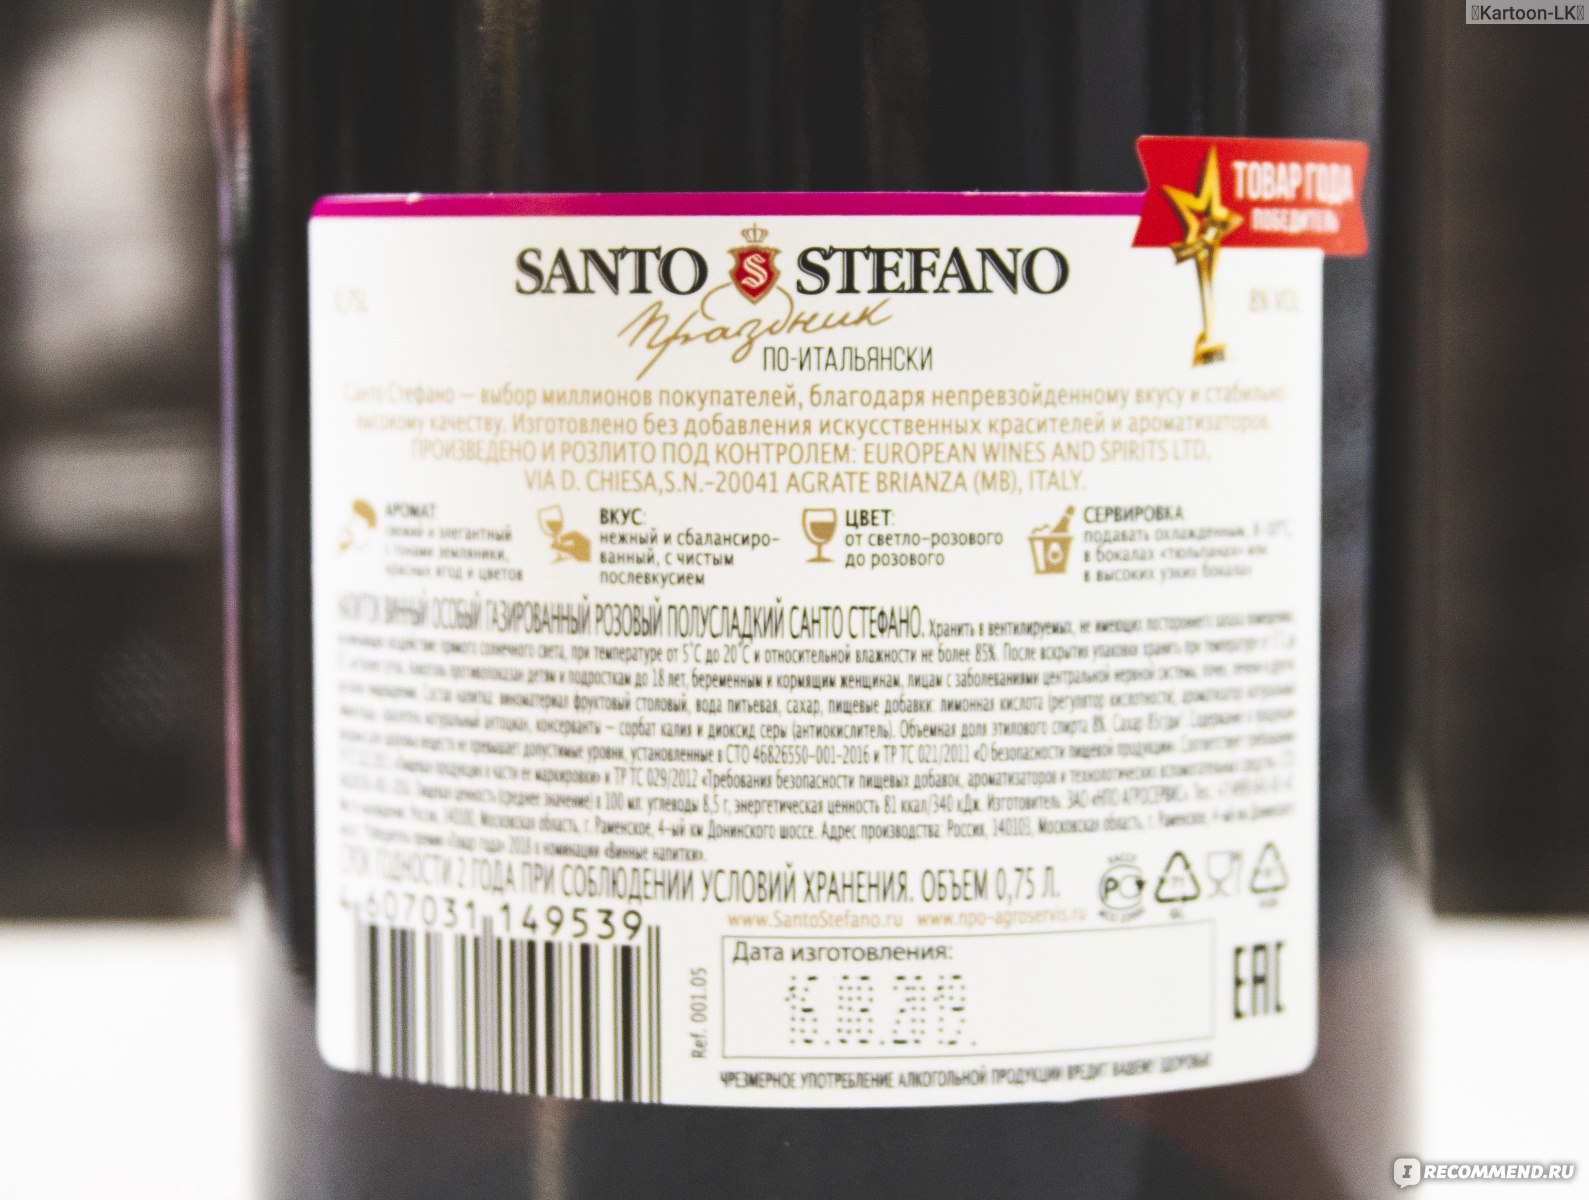 Винный напиток Санто Стефано